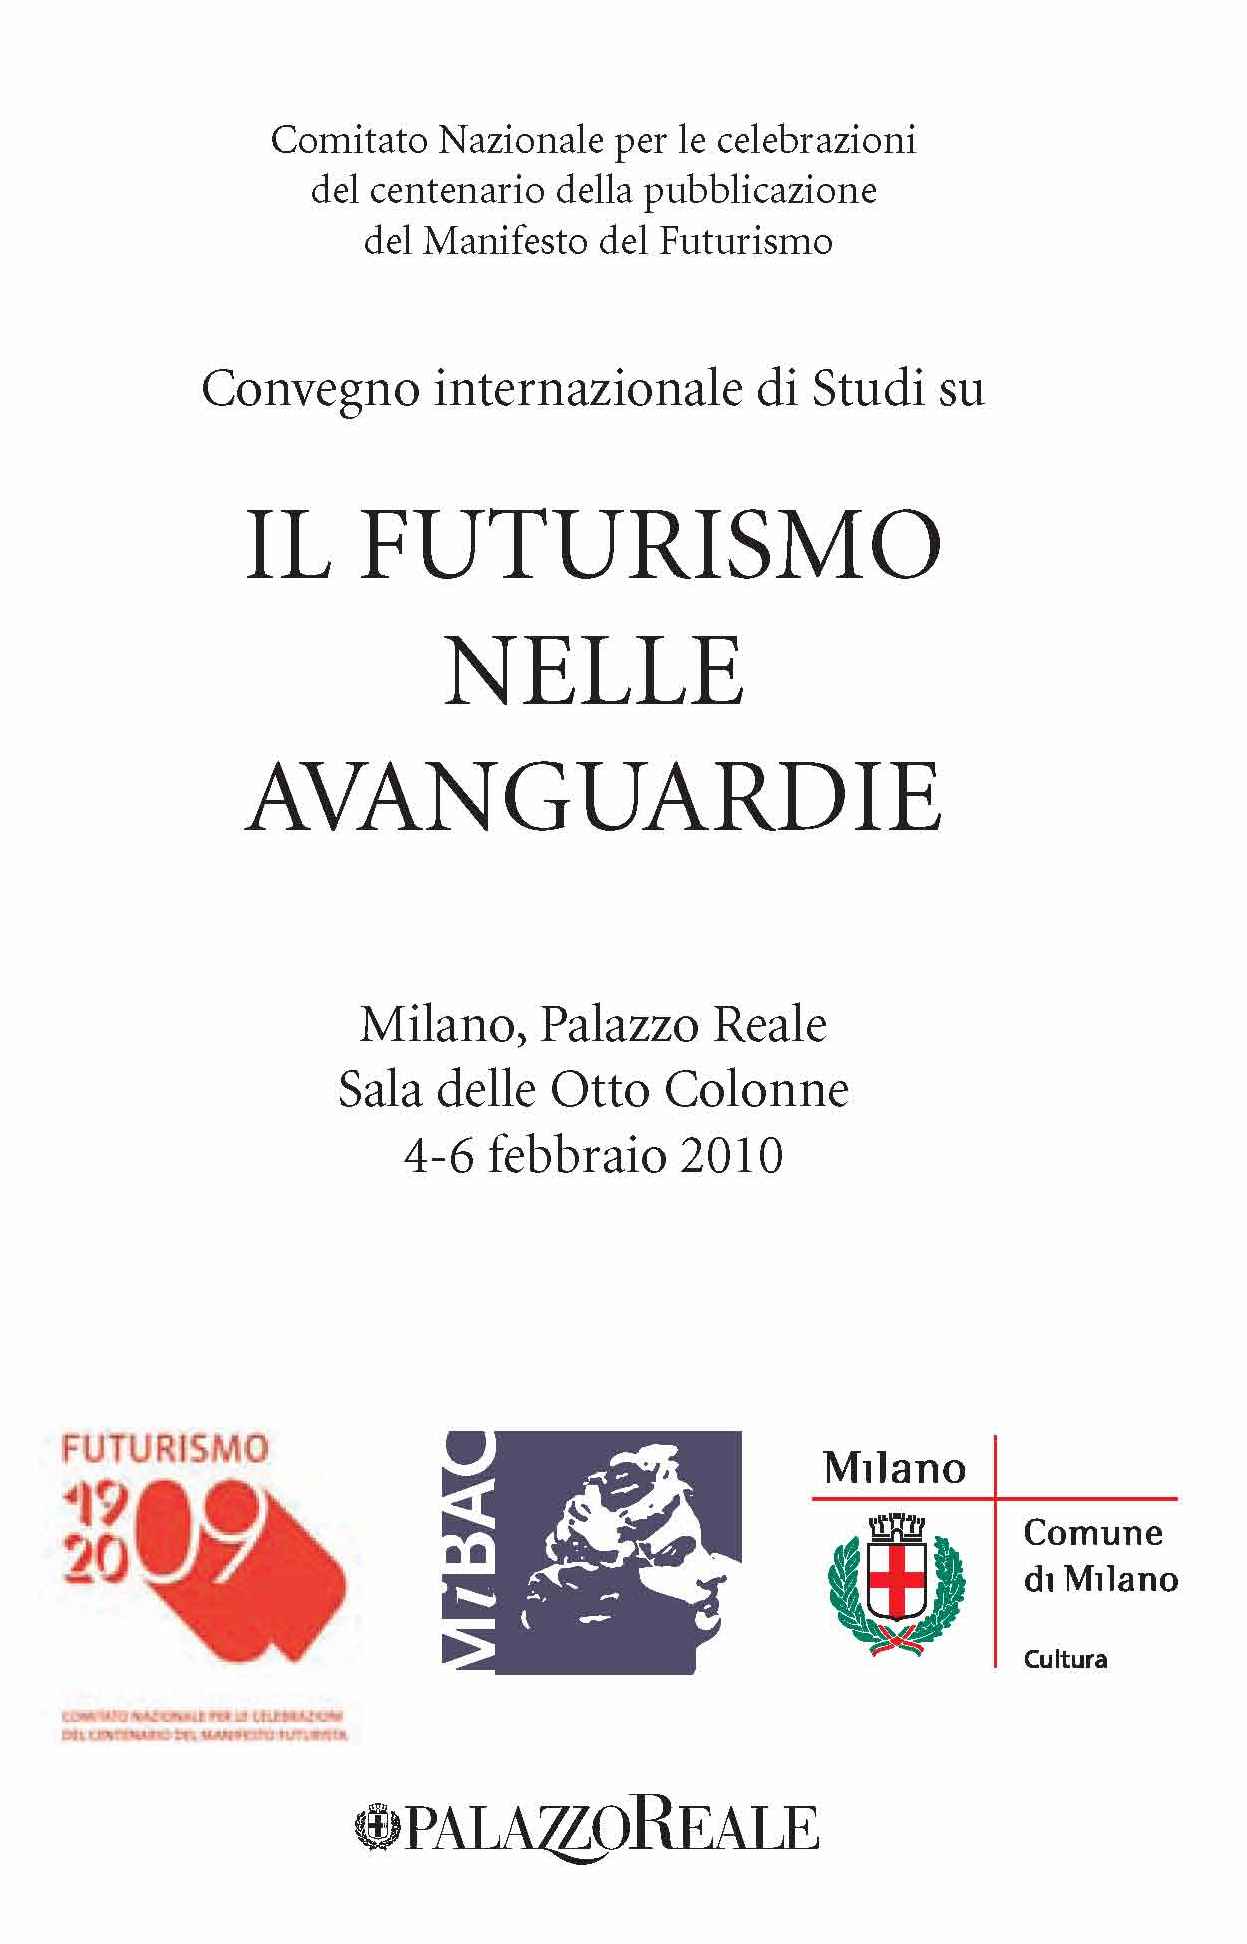 Conference: Il Futurismo nelle Avanguardie (Milan, Feb 4-6)